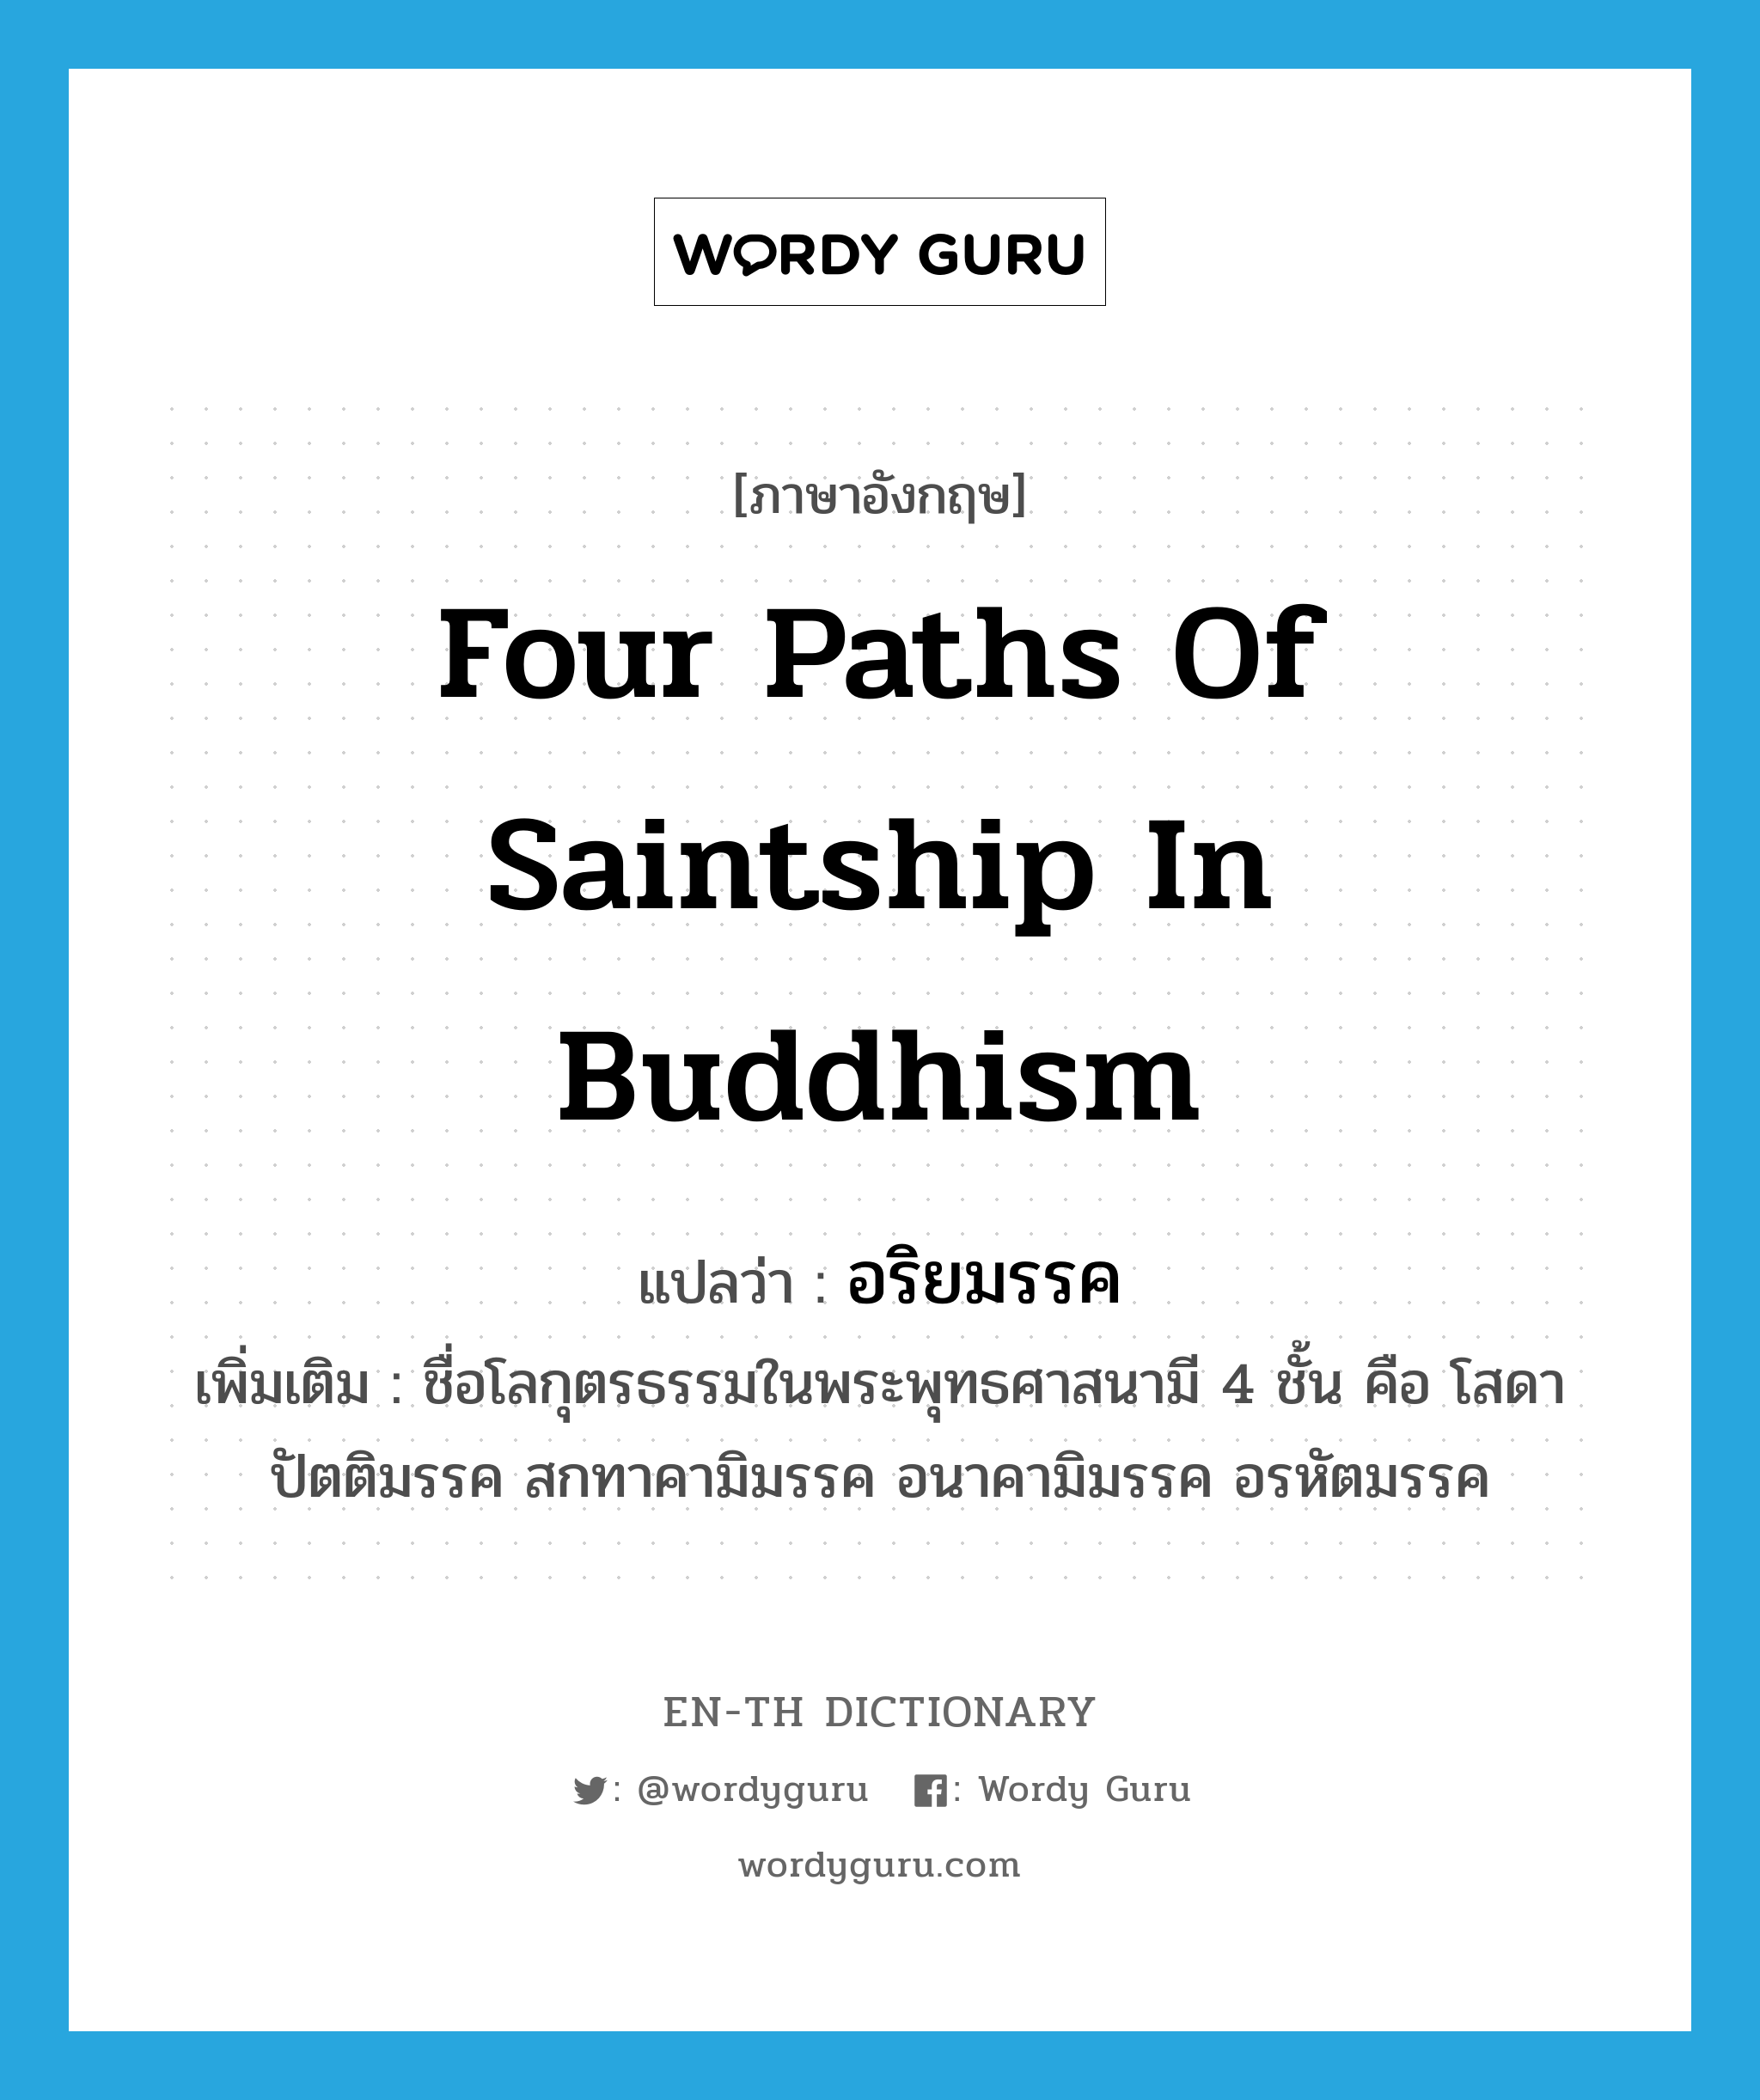 four paths of saintship in Buddhism แปลว่า?, คำศัพท์ภาษาอังกฤษ four paths of saintship in Buddhism แปลว่า อริยมรรค ประเภท N เพิ่มเติม ชื่อโลกุตรธรรมในพระพุทธศาสนามี 4 ชั้น คือ โสดาปัตติมรรค สกทาคามิมรรค อนาคามิมรรค อรหัตมรรค หมวด N